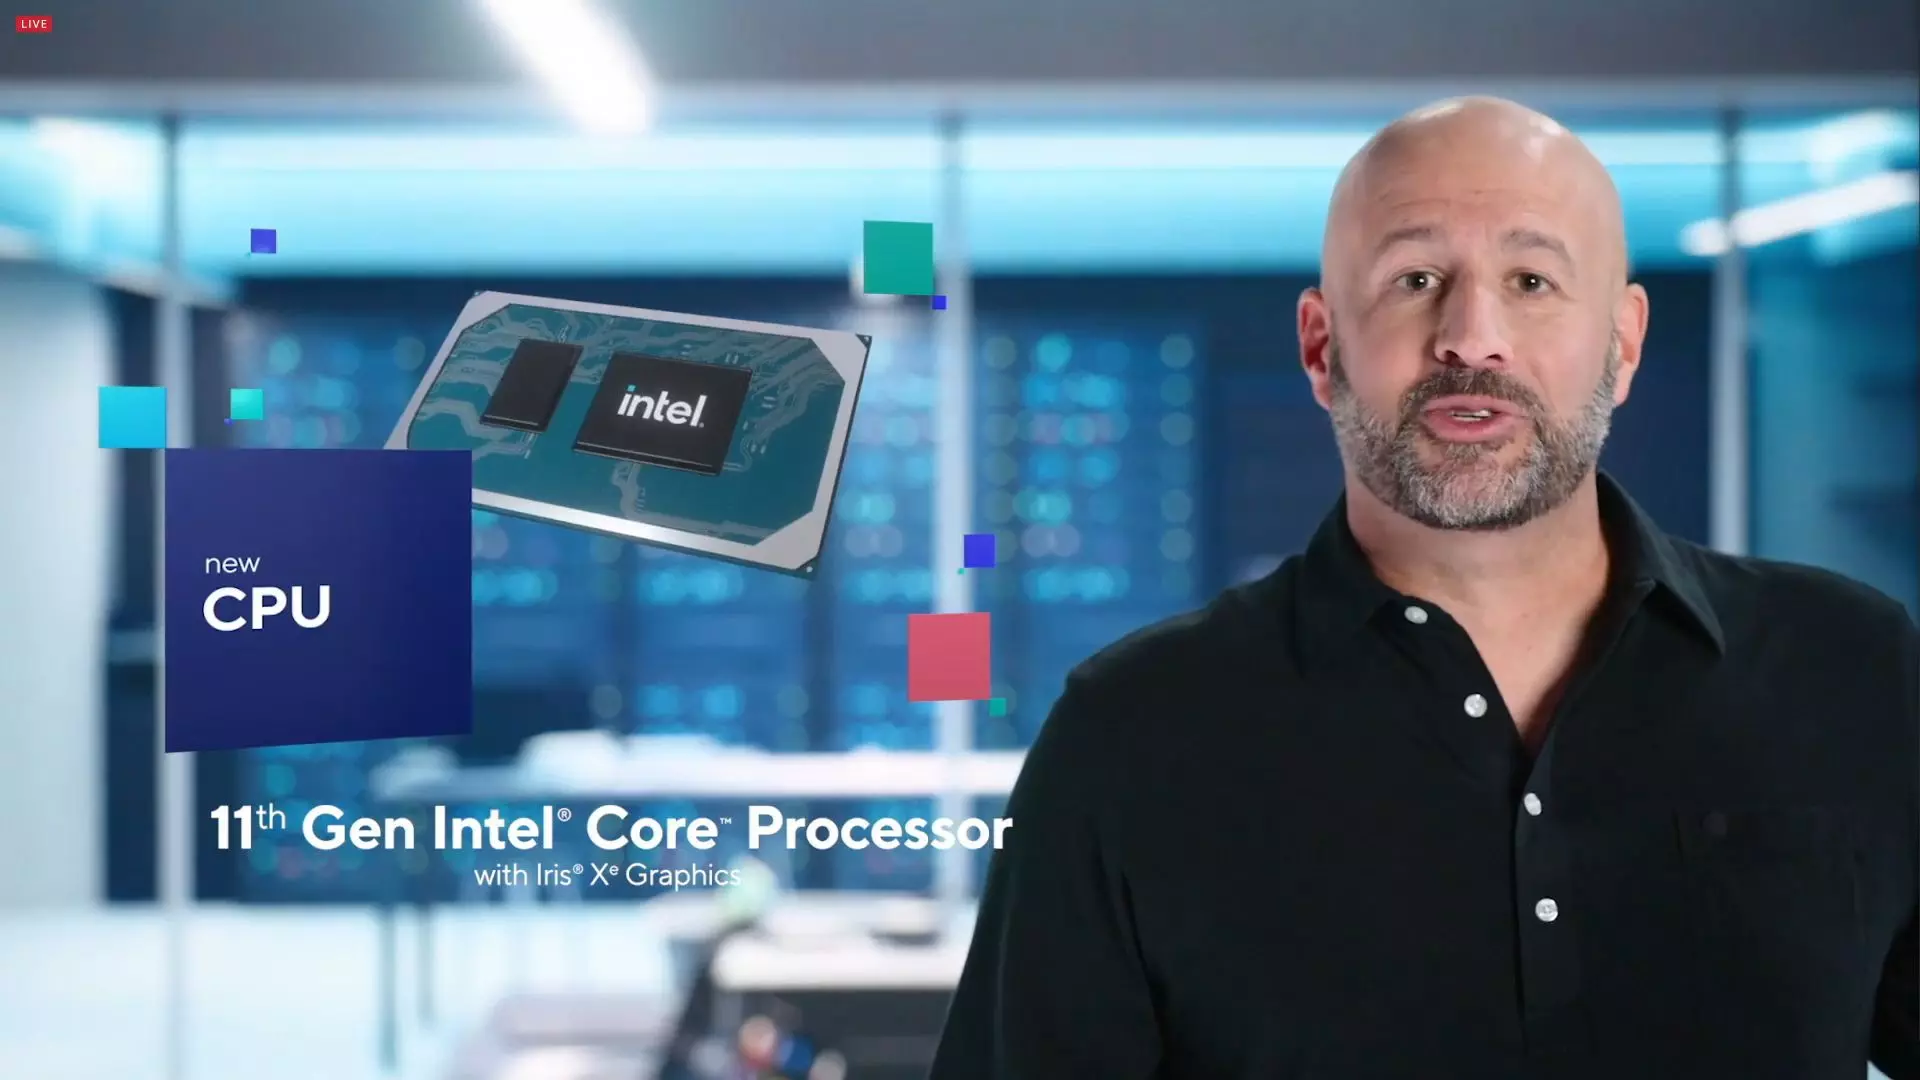 Nagy durranásnak ígérkezik az Intel Tiger Lake sorozata